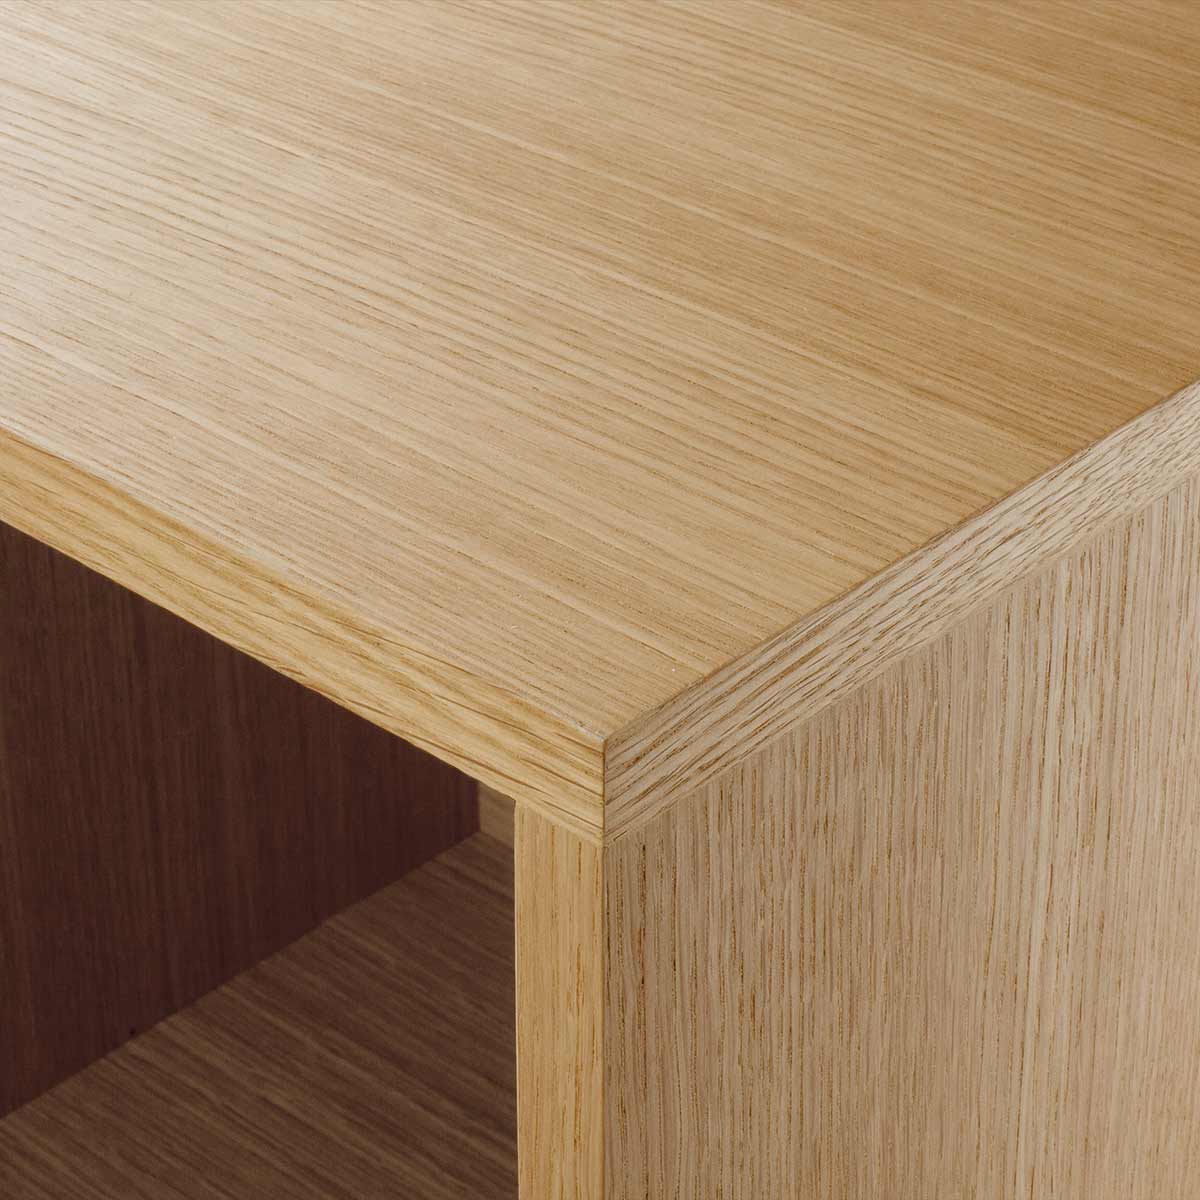 détail meuble bas à tiroirs KILT de la marque Kulile en chêne naturel